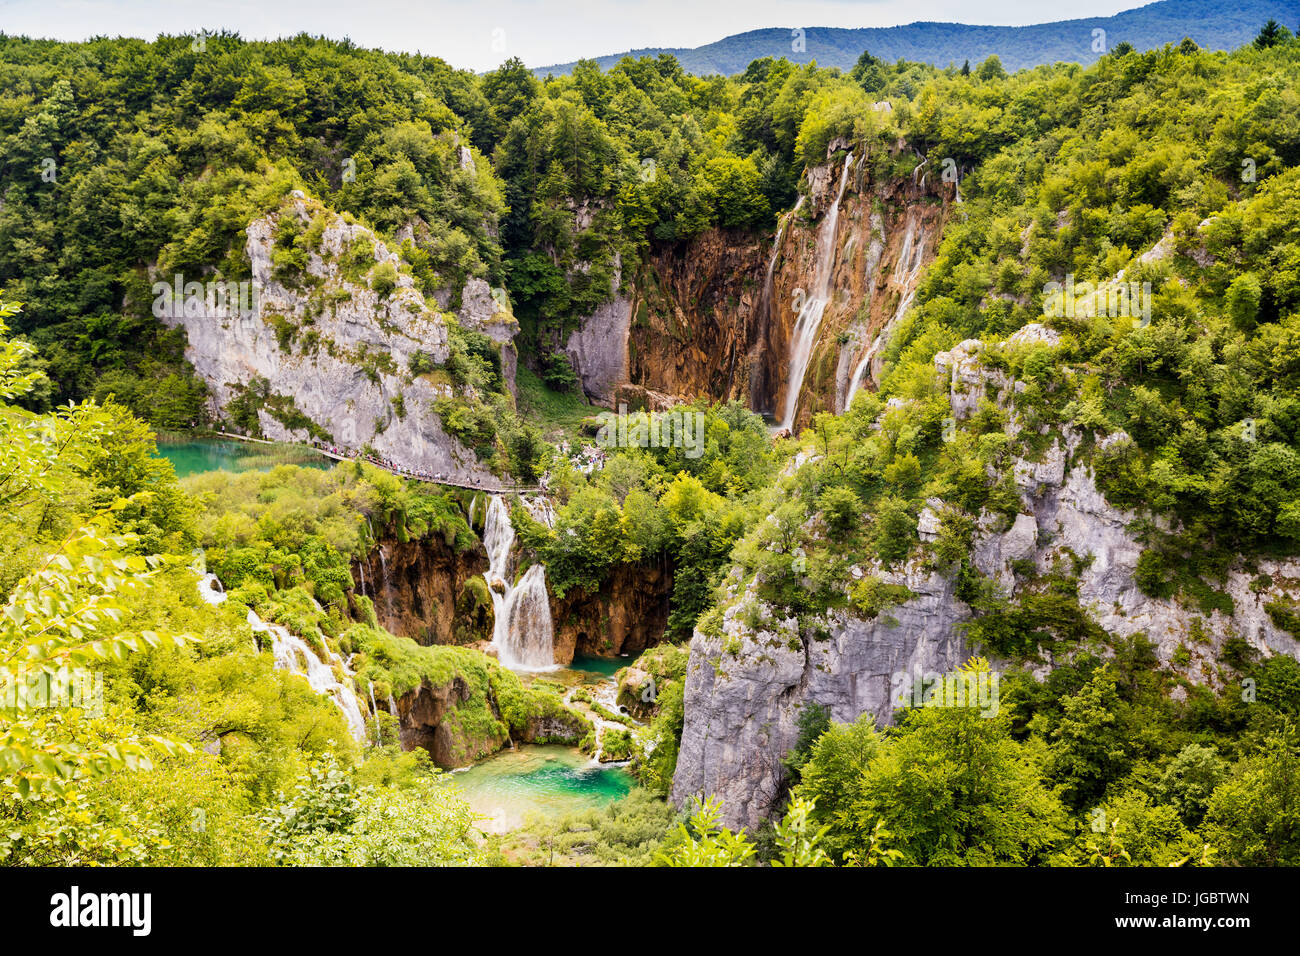 Merveille naturelle du monde - le parc national des lacs de Plitvice en Croatie Banque D'Images